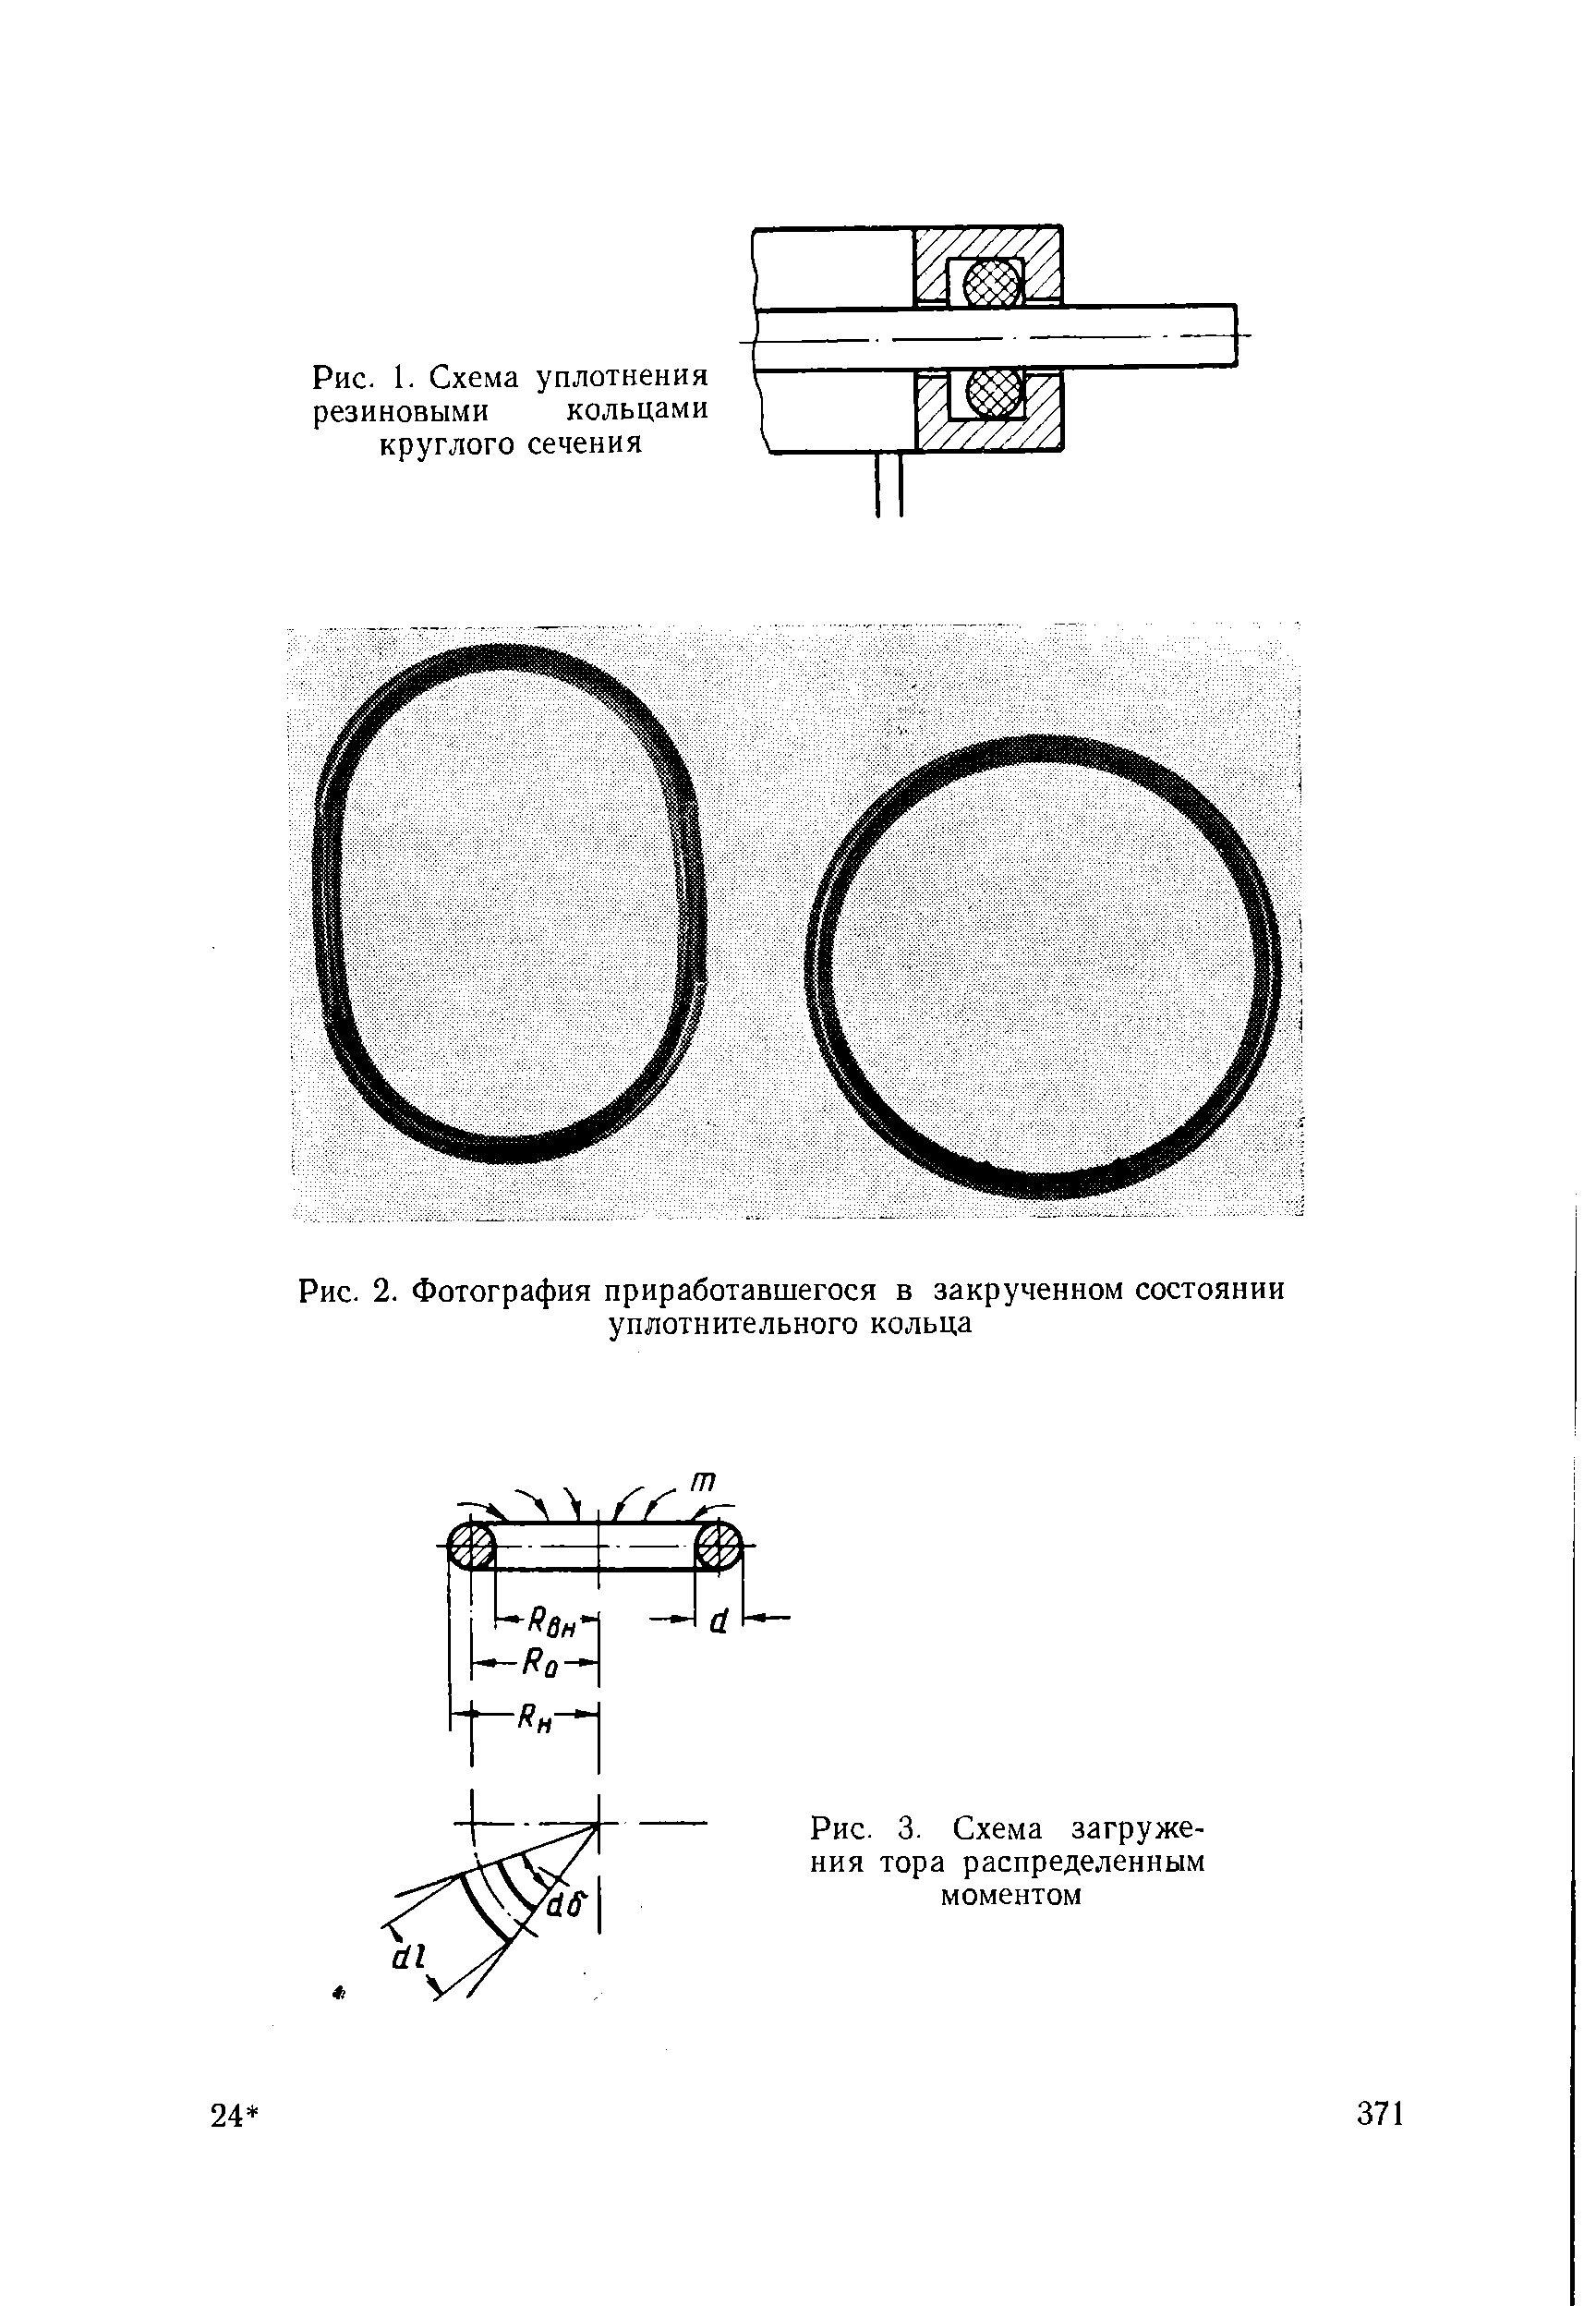 Рис. 1. Схема уплотнения резиновыми кольцами круглого сечения
